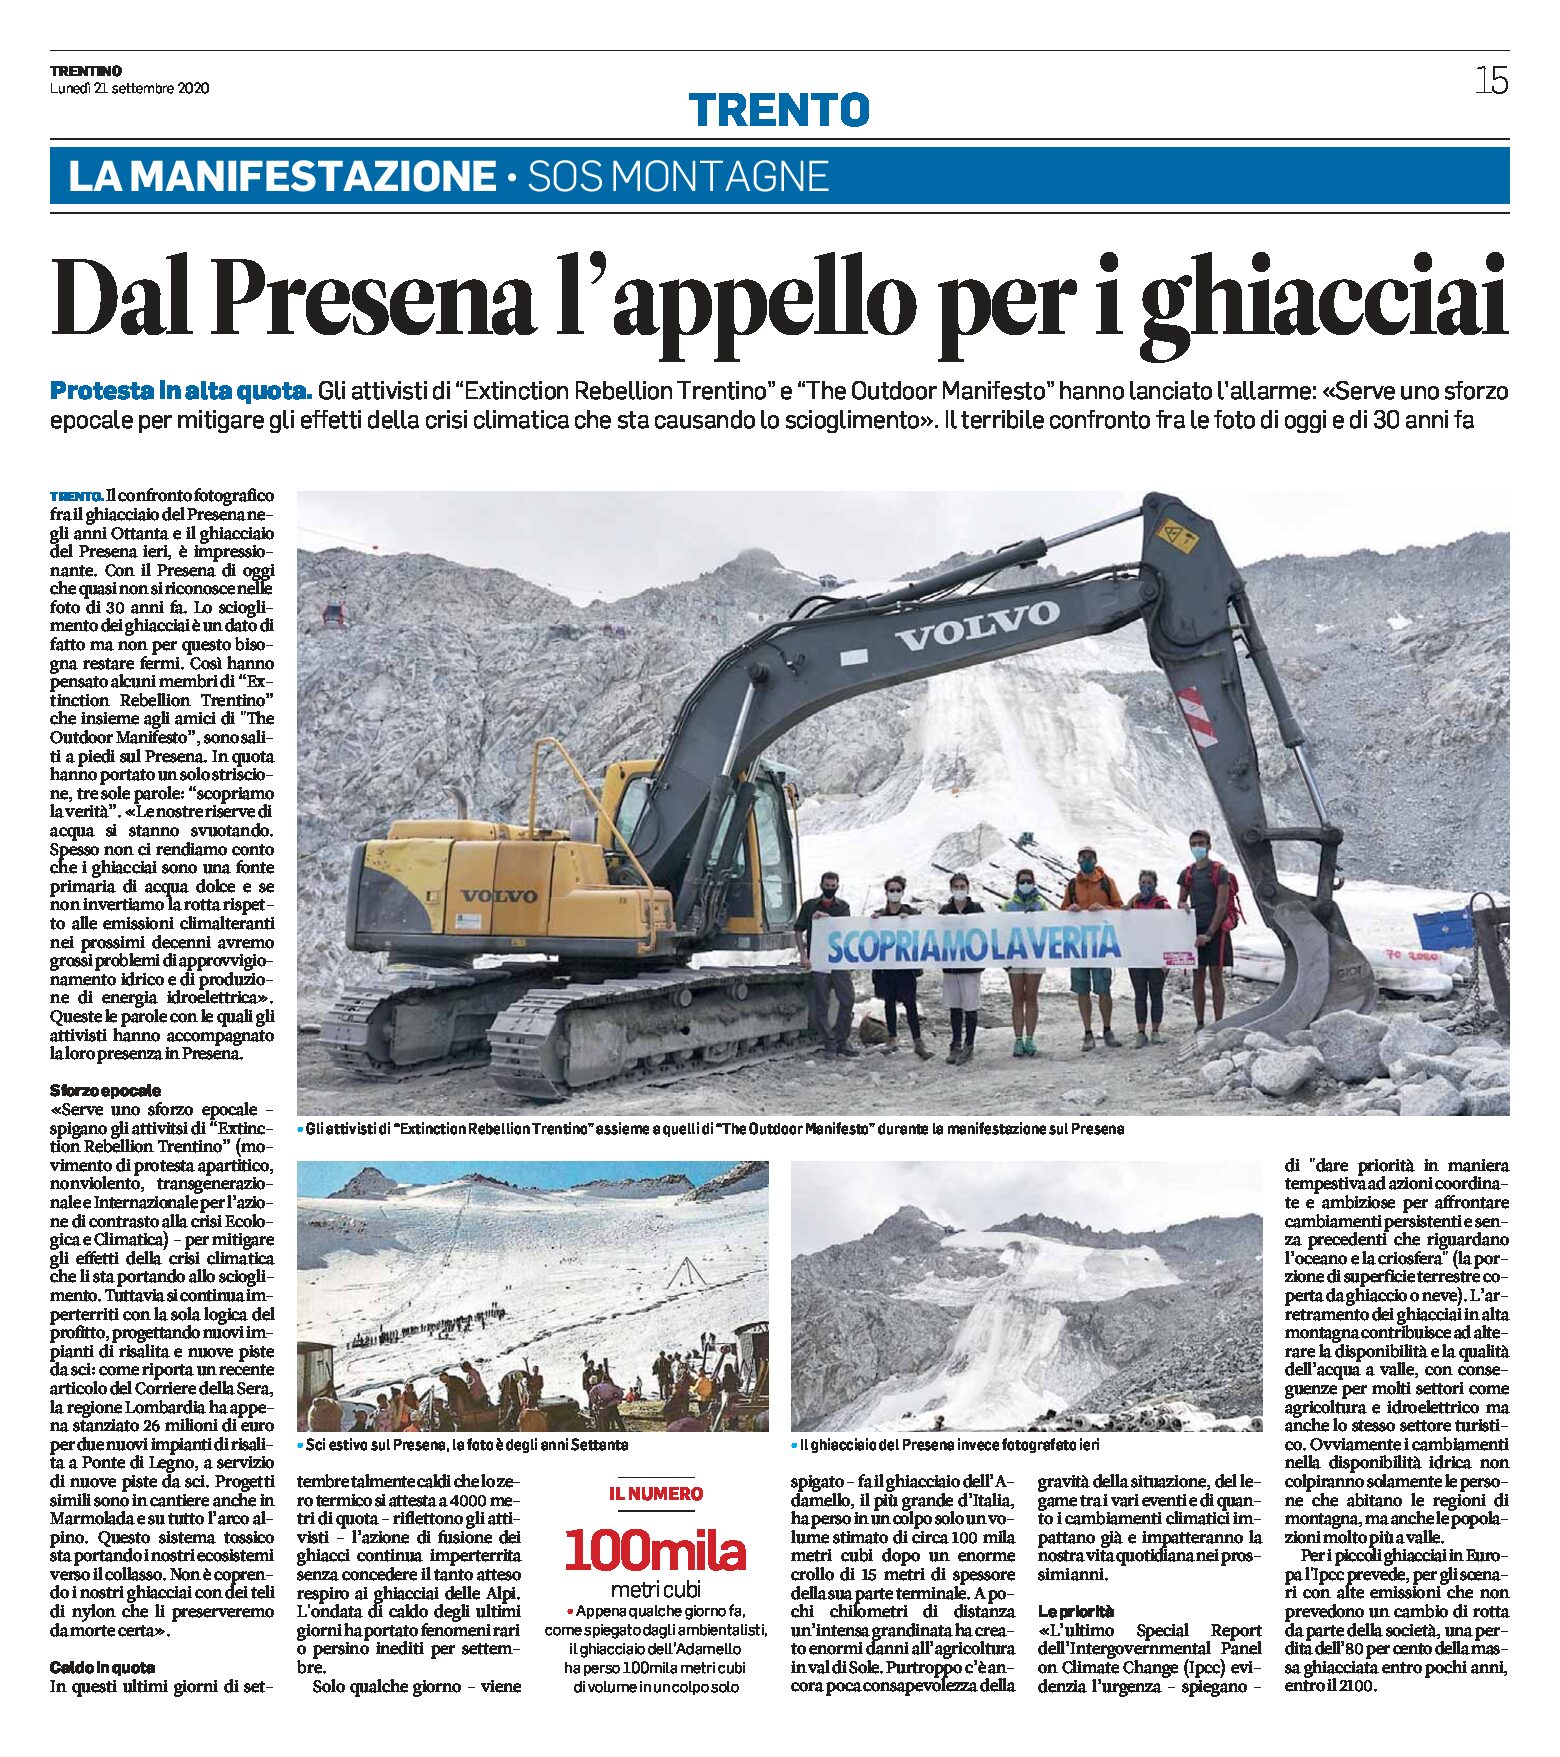 SOS montagne: dal Presena l’appello per i ghiacciai